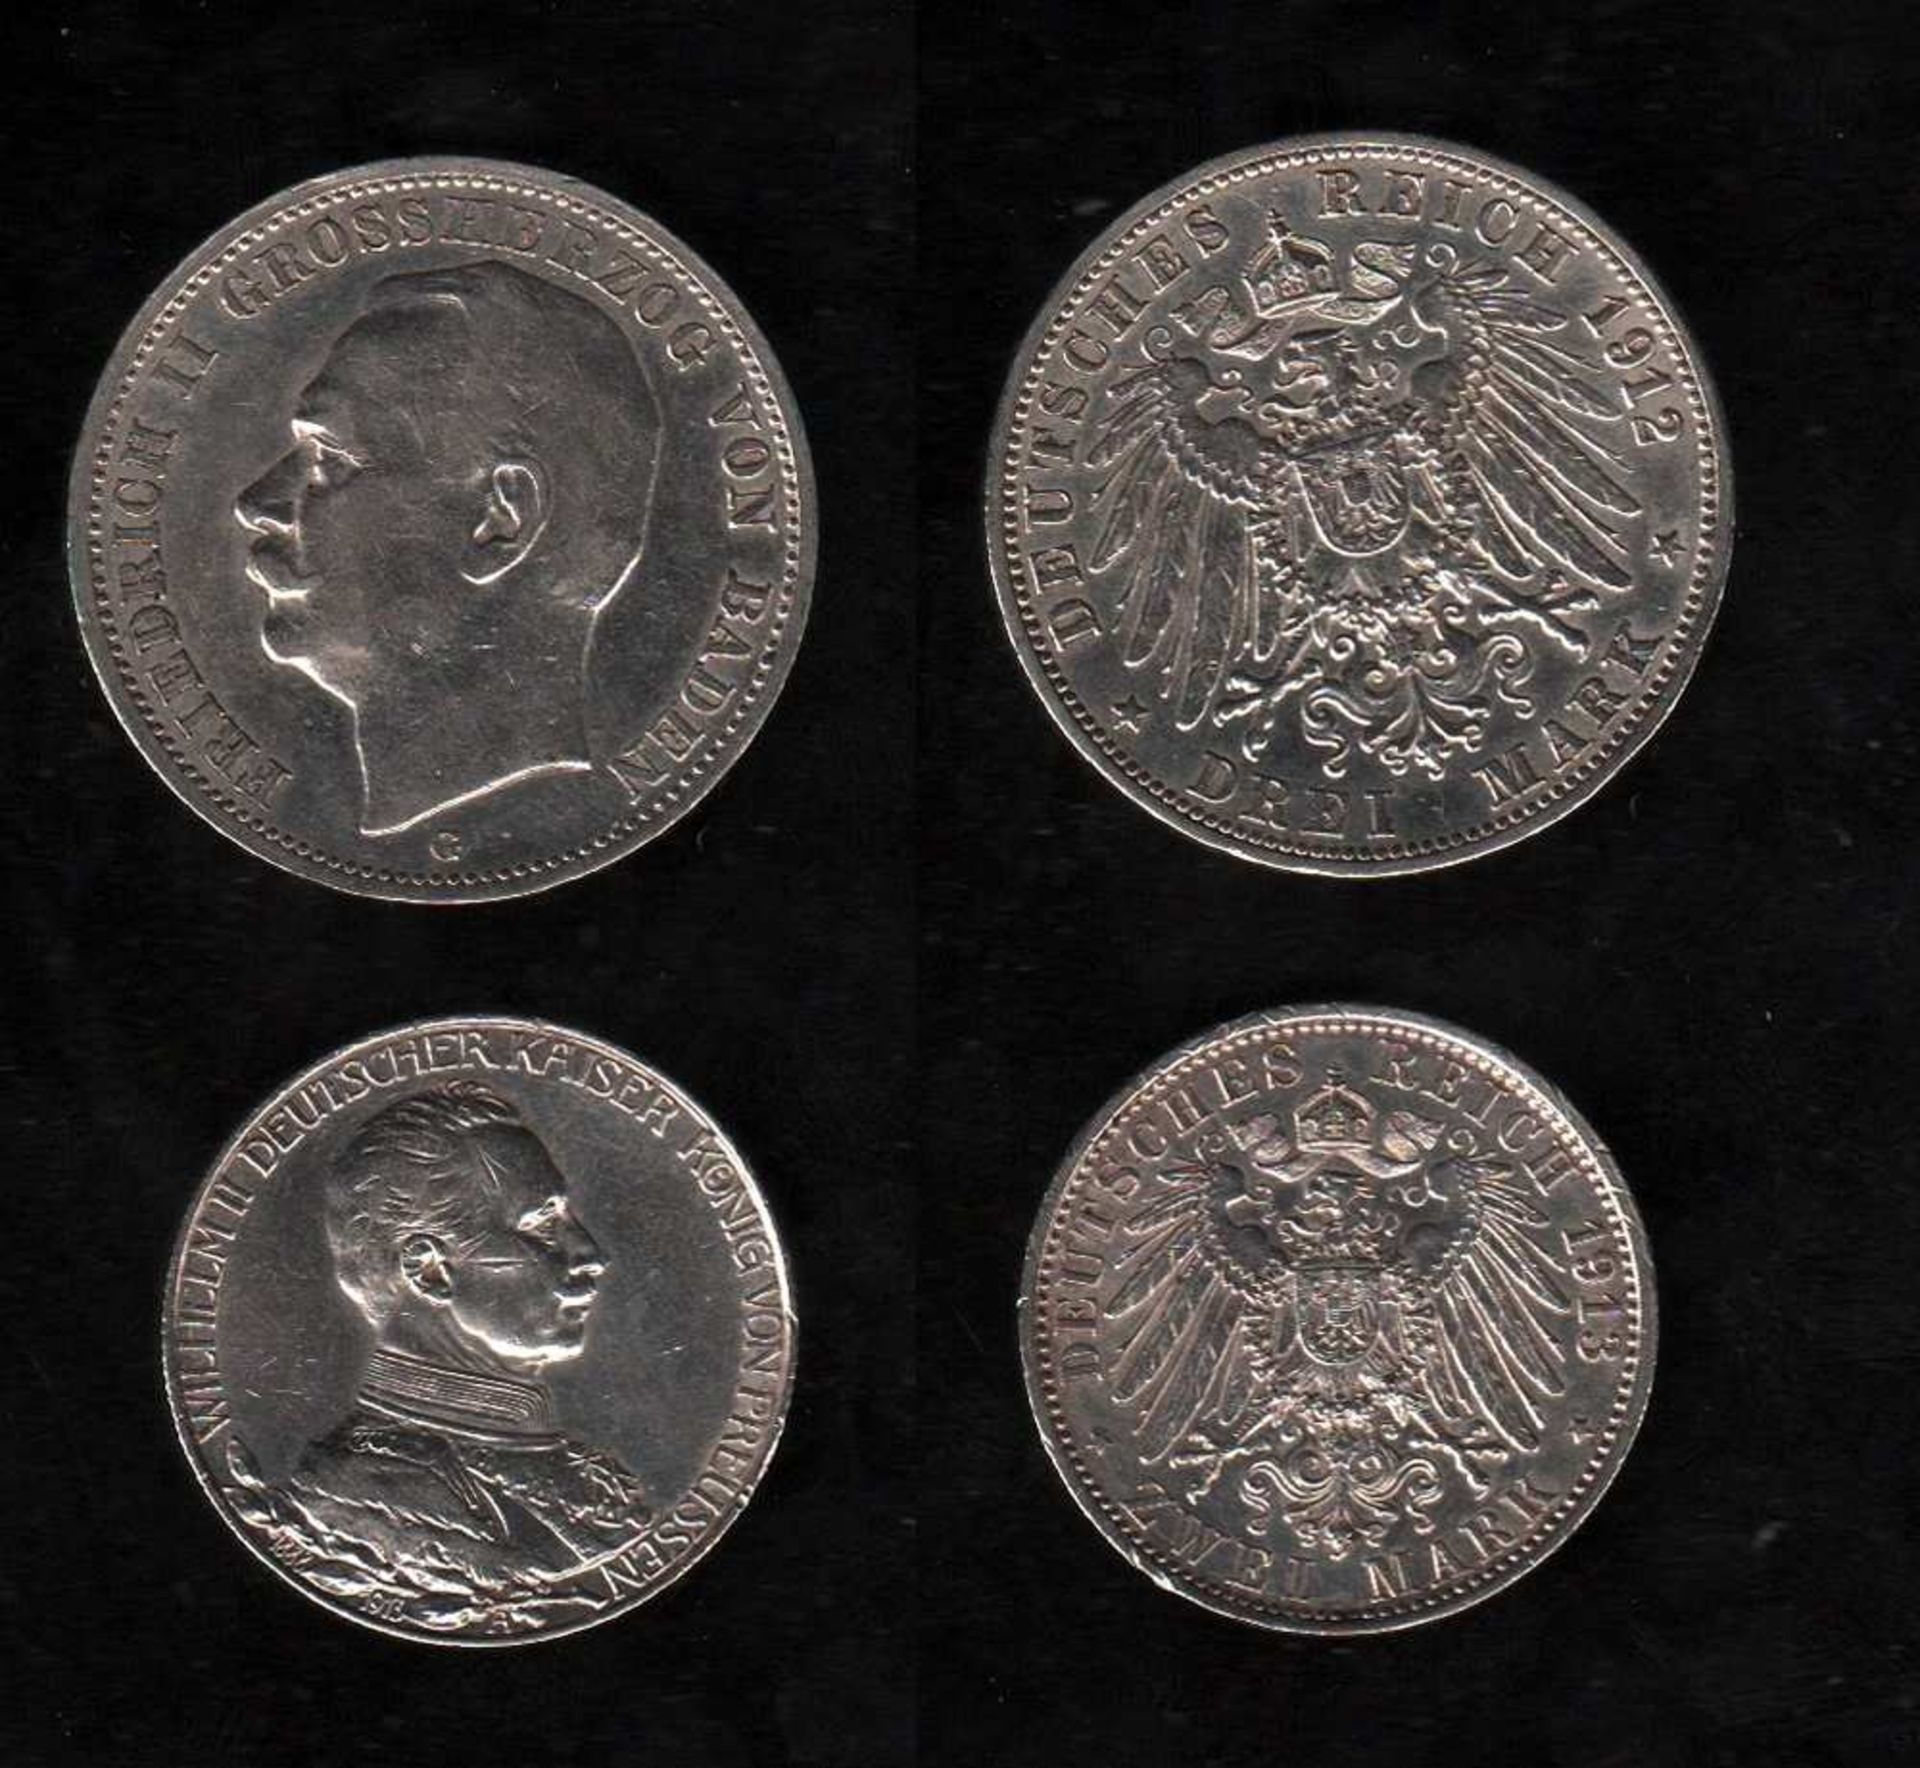 # Deutsches Reich. Silbermünze. 3 Mark. Friedrich II., Großherzog von Baden. G 1912. Vorderseite: